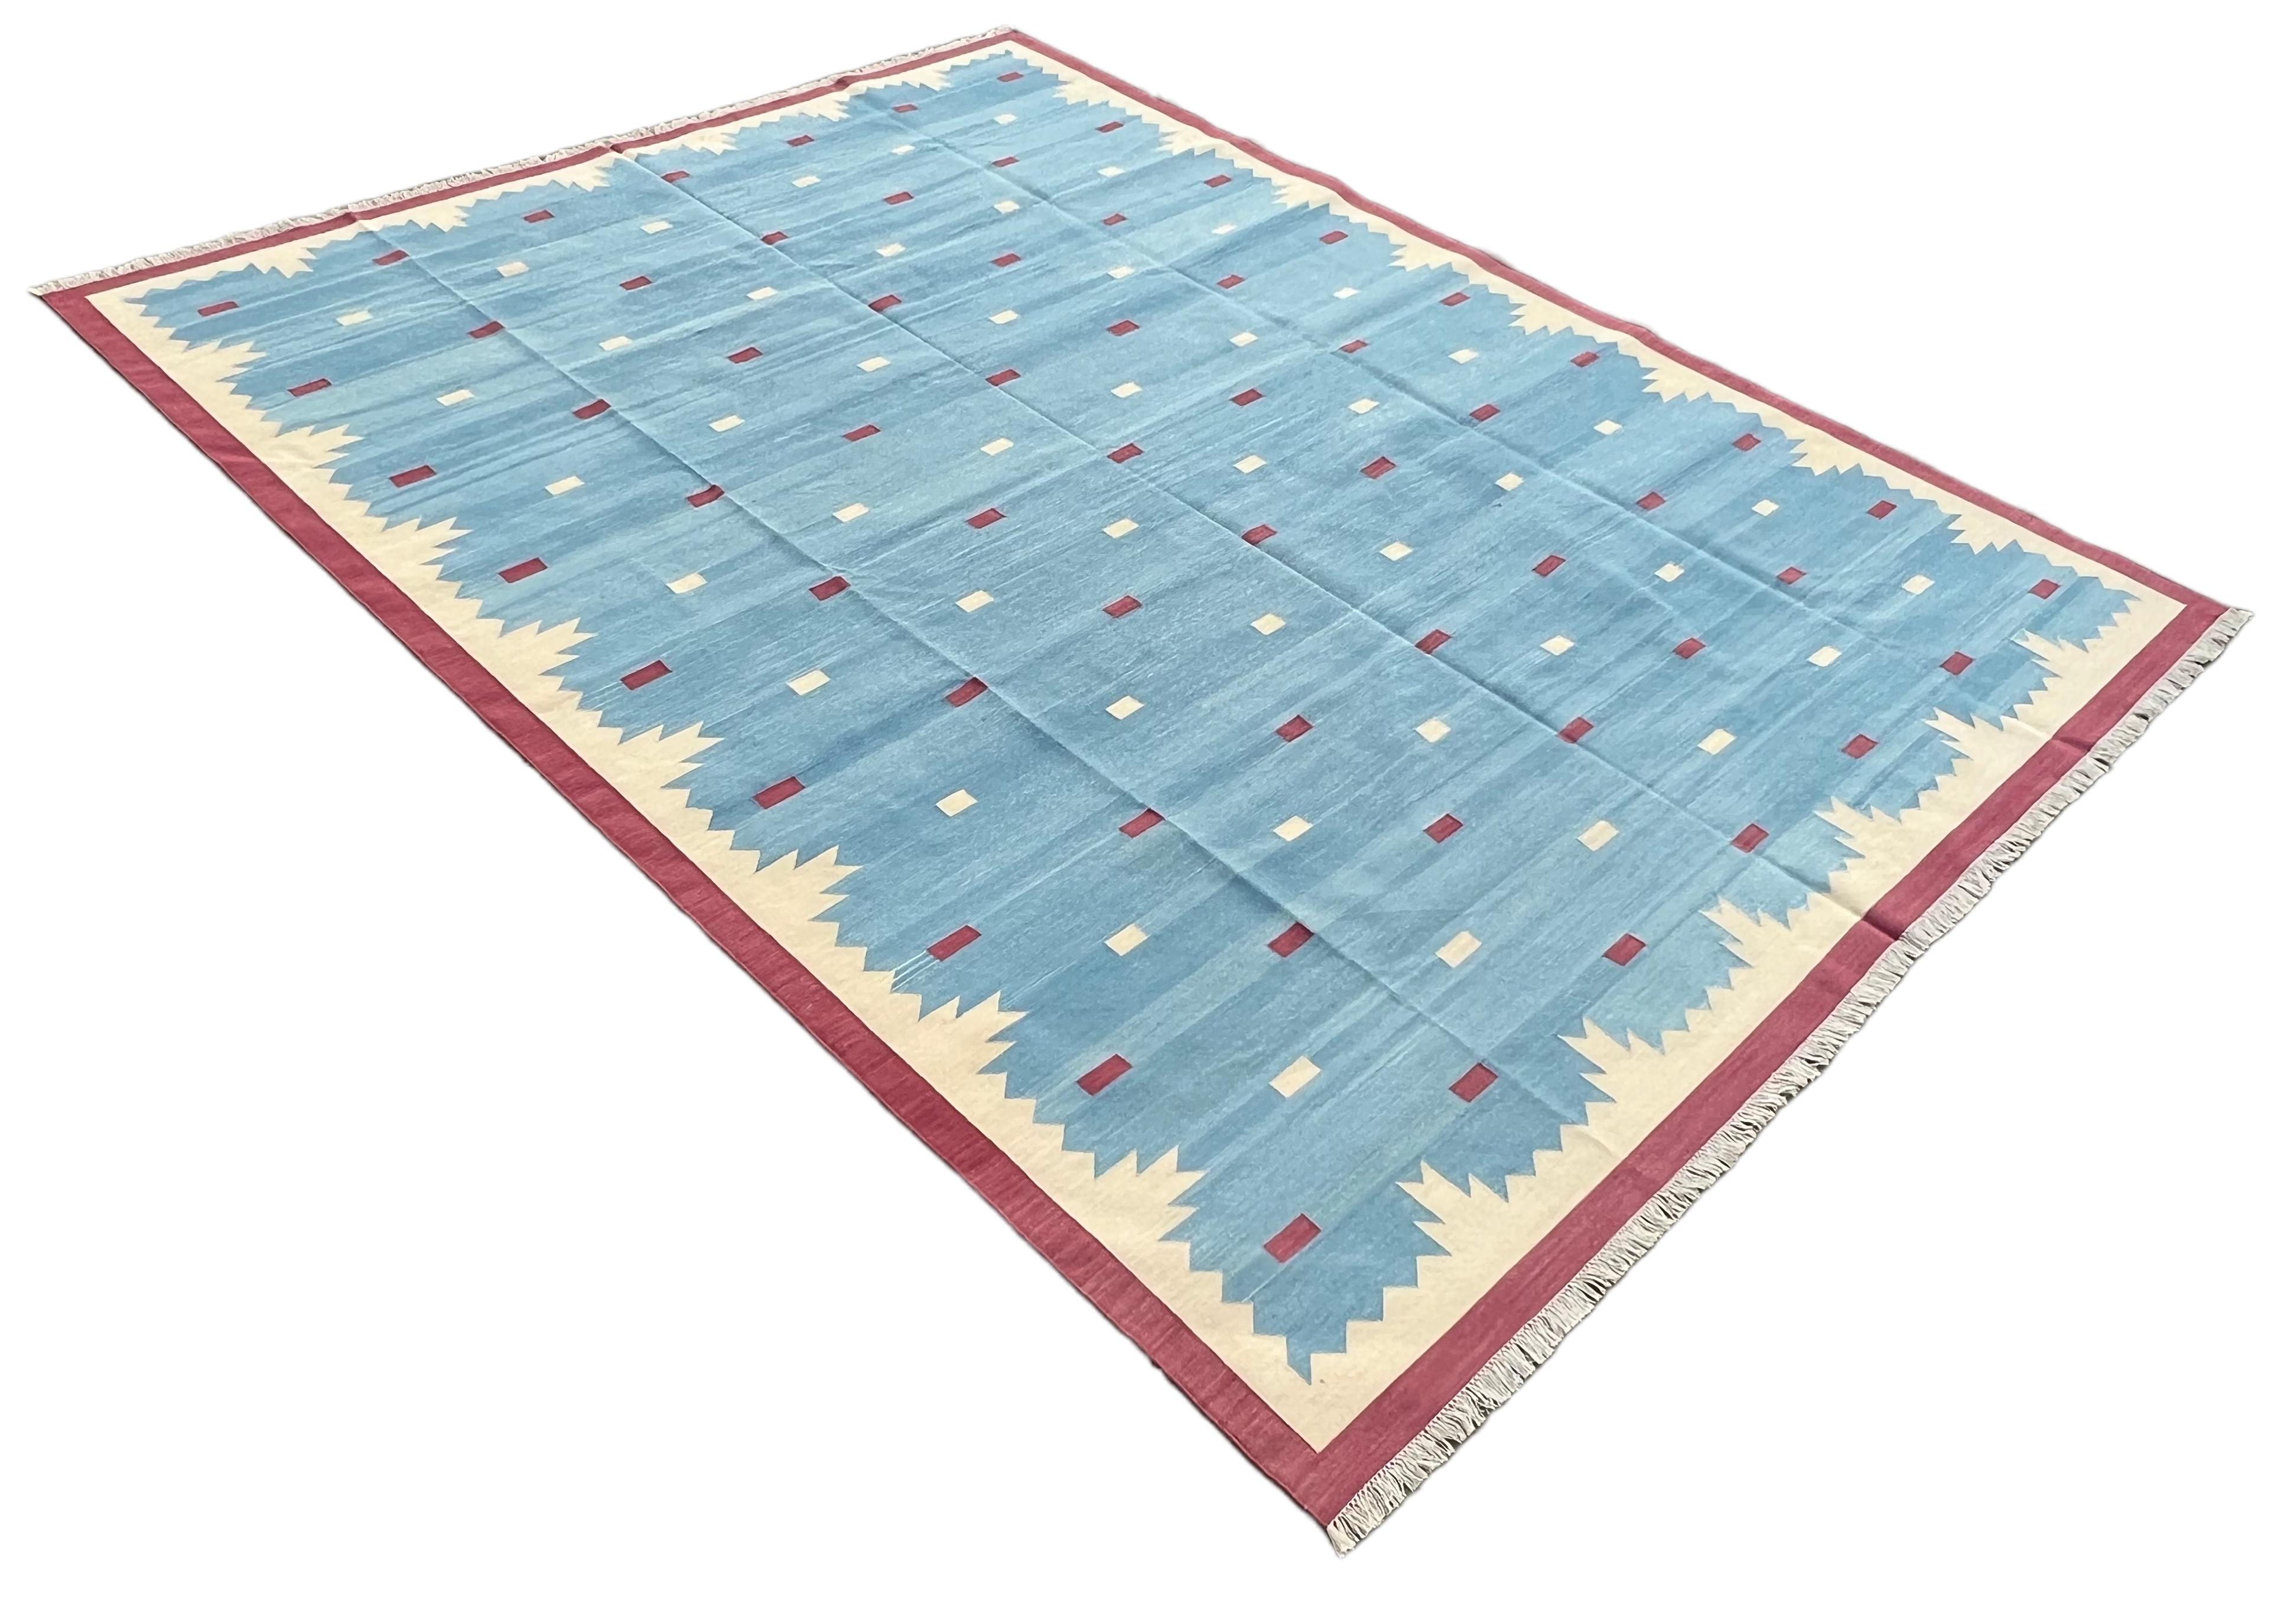 Baumwolle pflanzlich gefärbt Reversible Himmelblau und Rosa Geometrische gemusterten indischen Teppich - 9'x12'
Diese speziellen flachgewebten Dhurries werden aus 15-fachem Garn aus 100% Baumwolle handgewebt. Aufgrund der speziellen